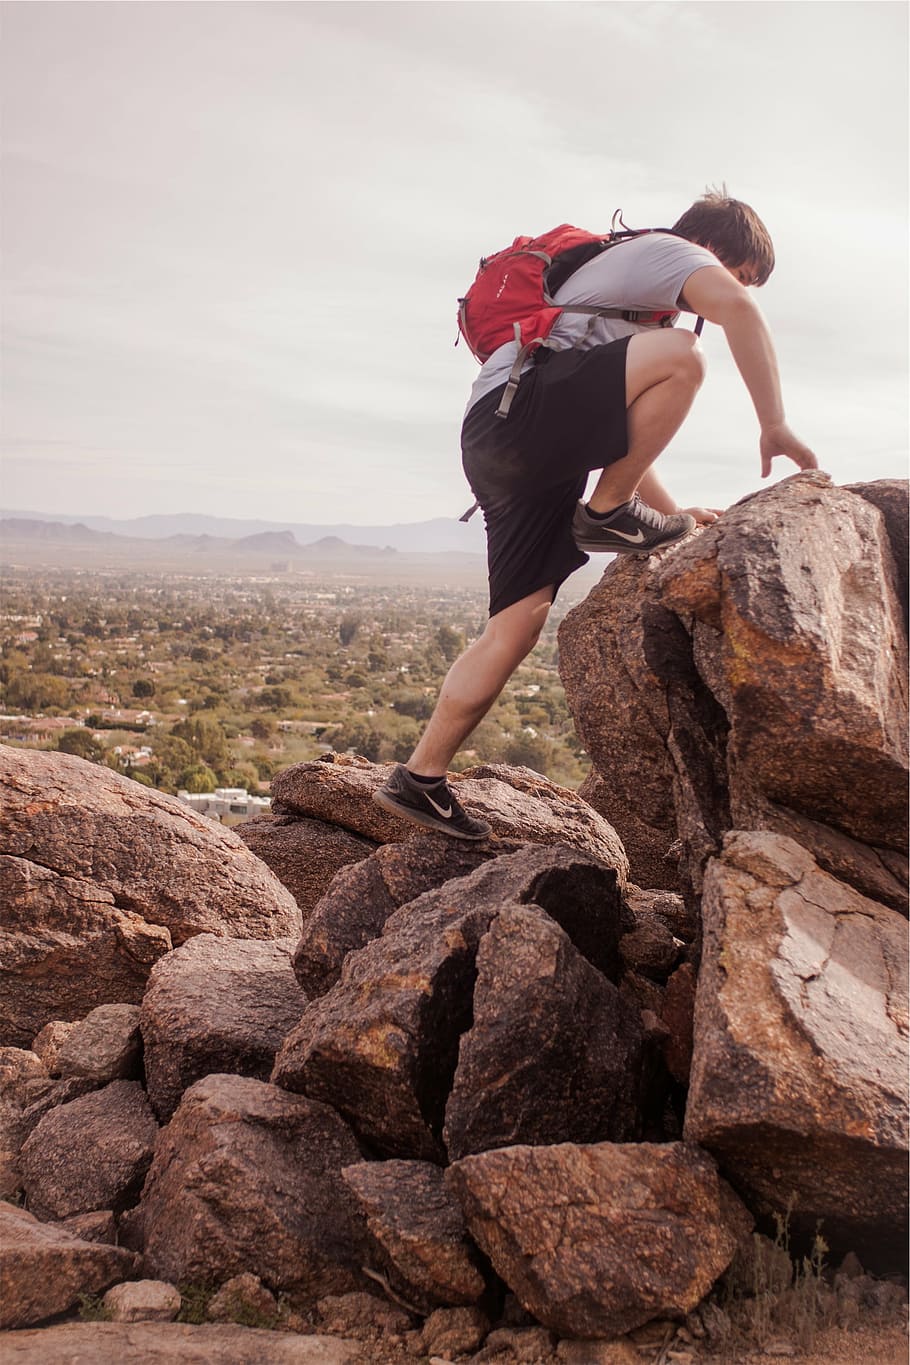 Persona, escalada, roca, hombre, rocoso, montaña, día, tiempo, senderismo, excursionista